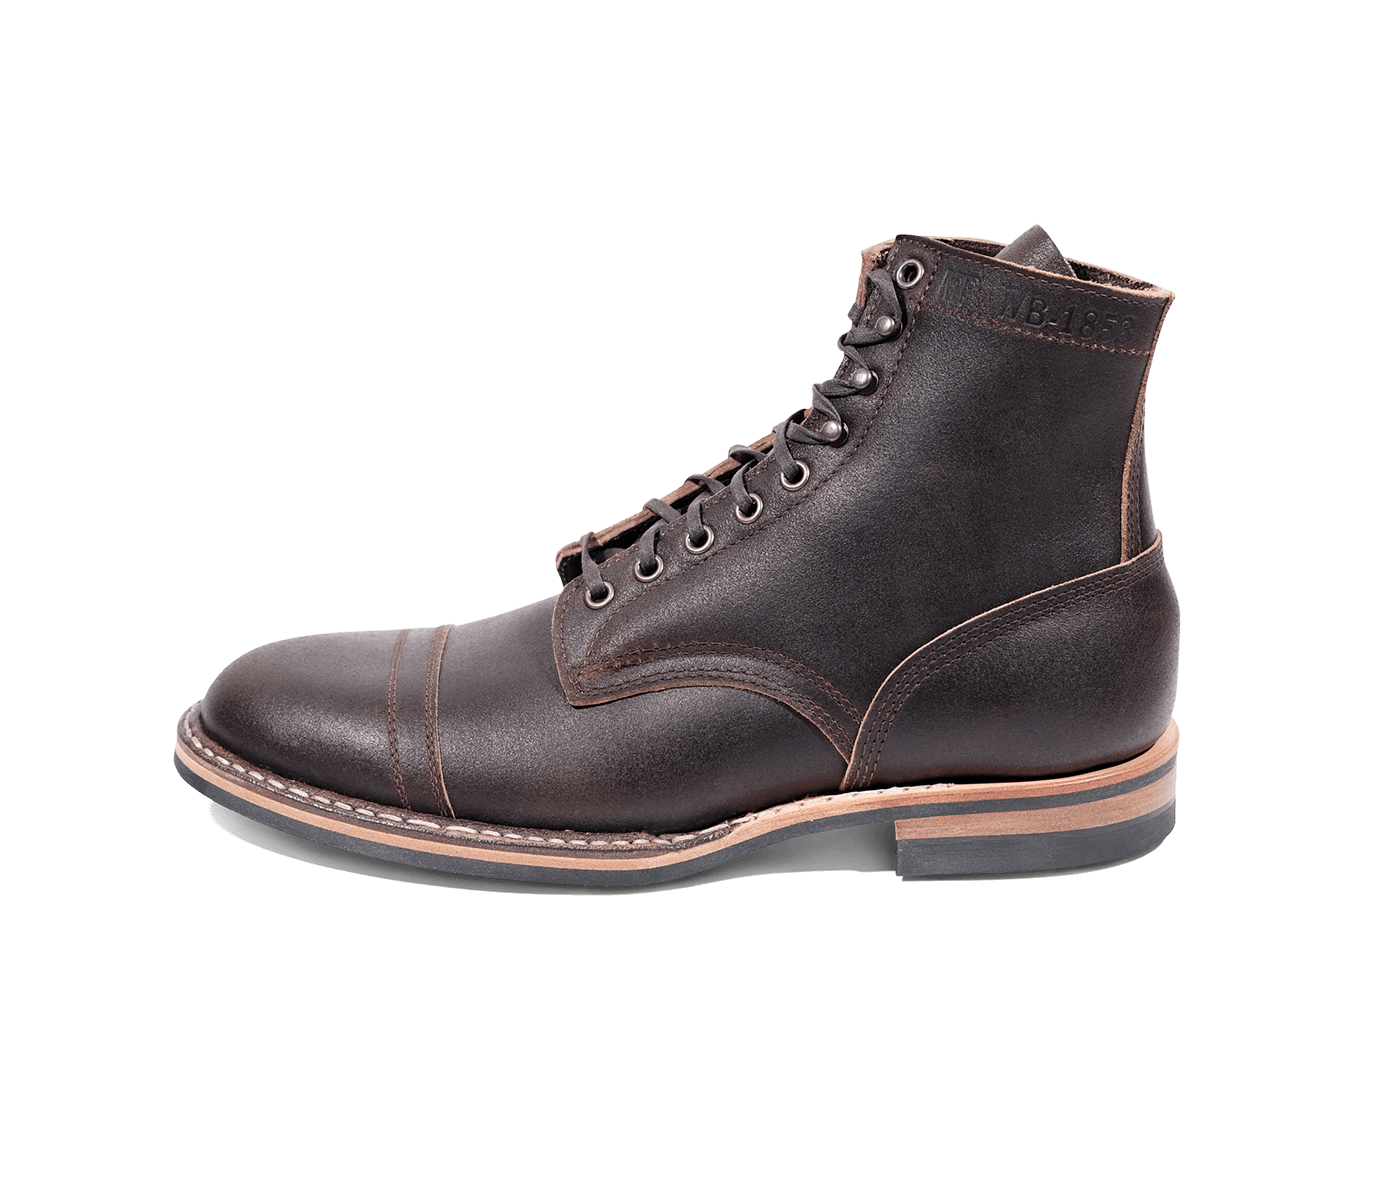 MP-Sherman Toe Cap (Dainite Sole): White's Boots, Inc.